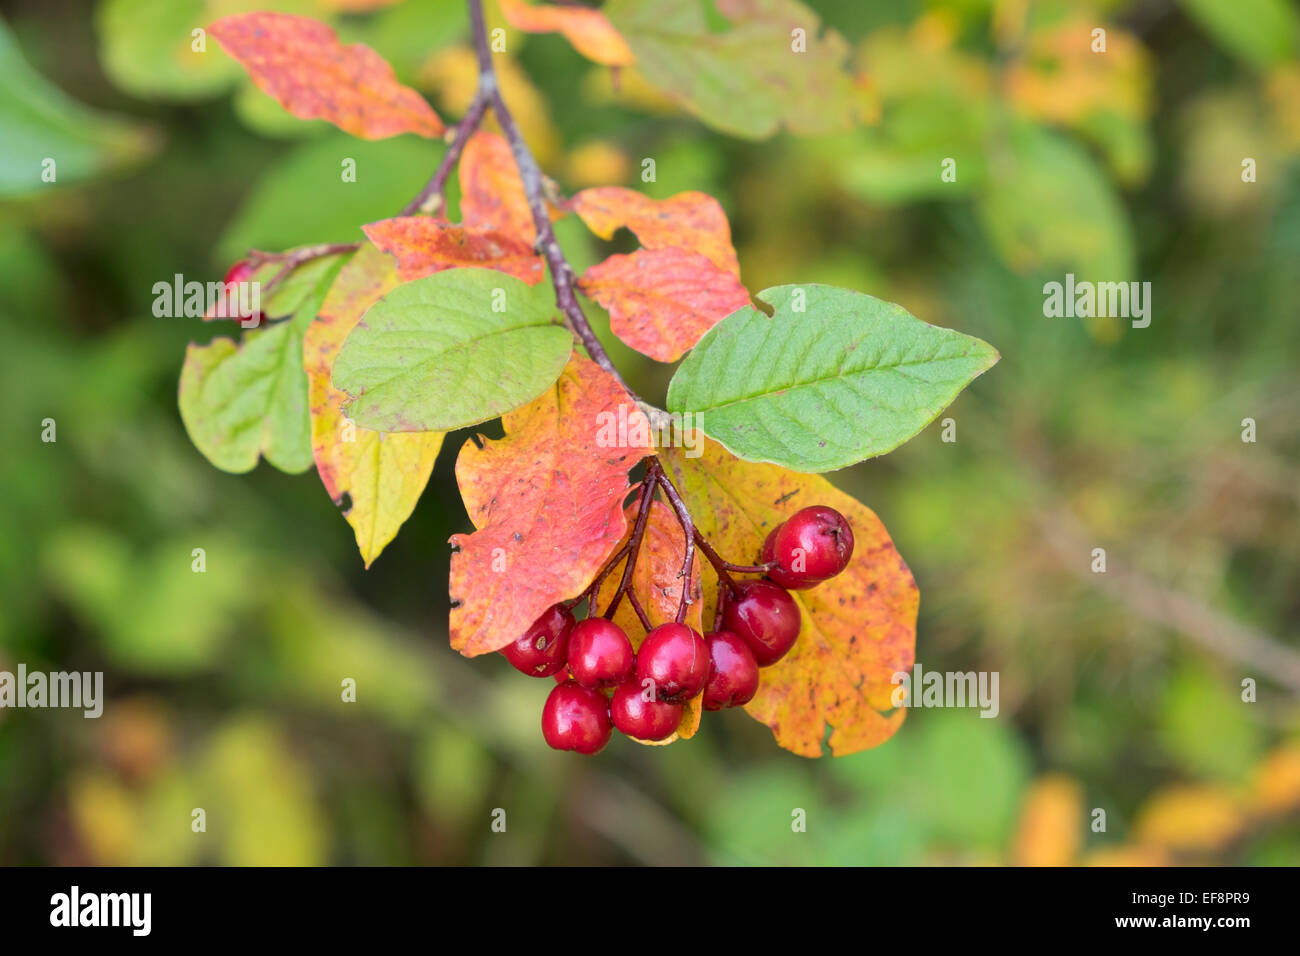 Berries on alder buckthorn (Frangula alnus), Bavaria, Germany Stock Photo